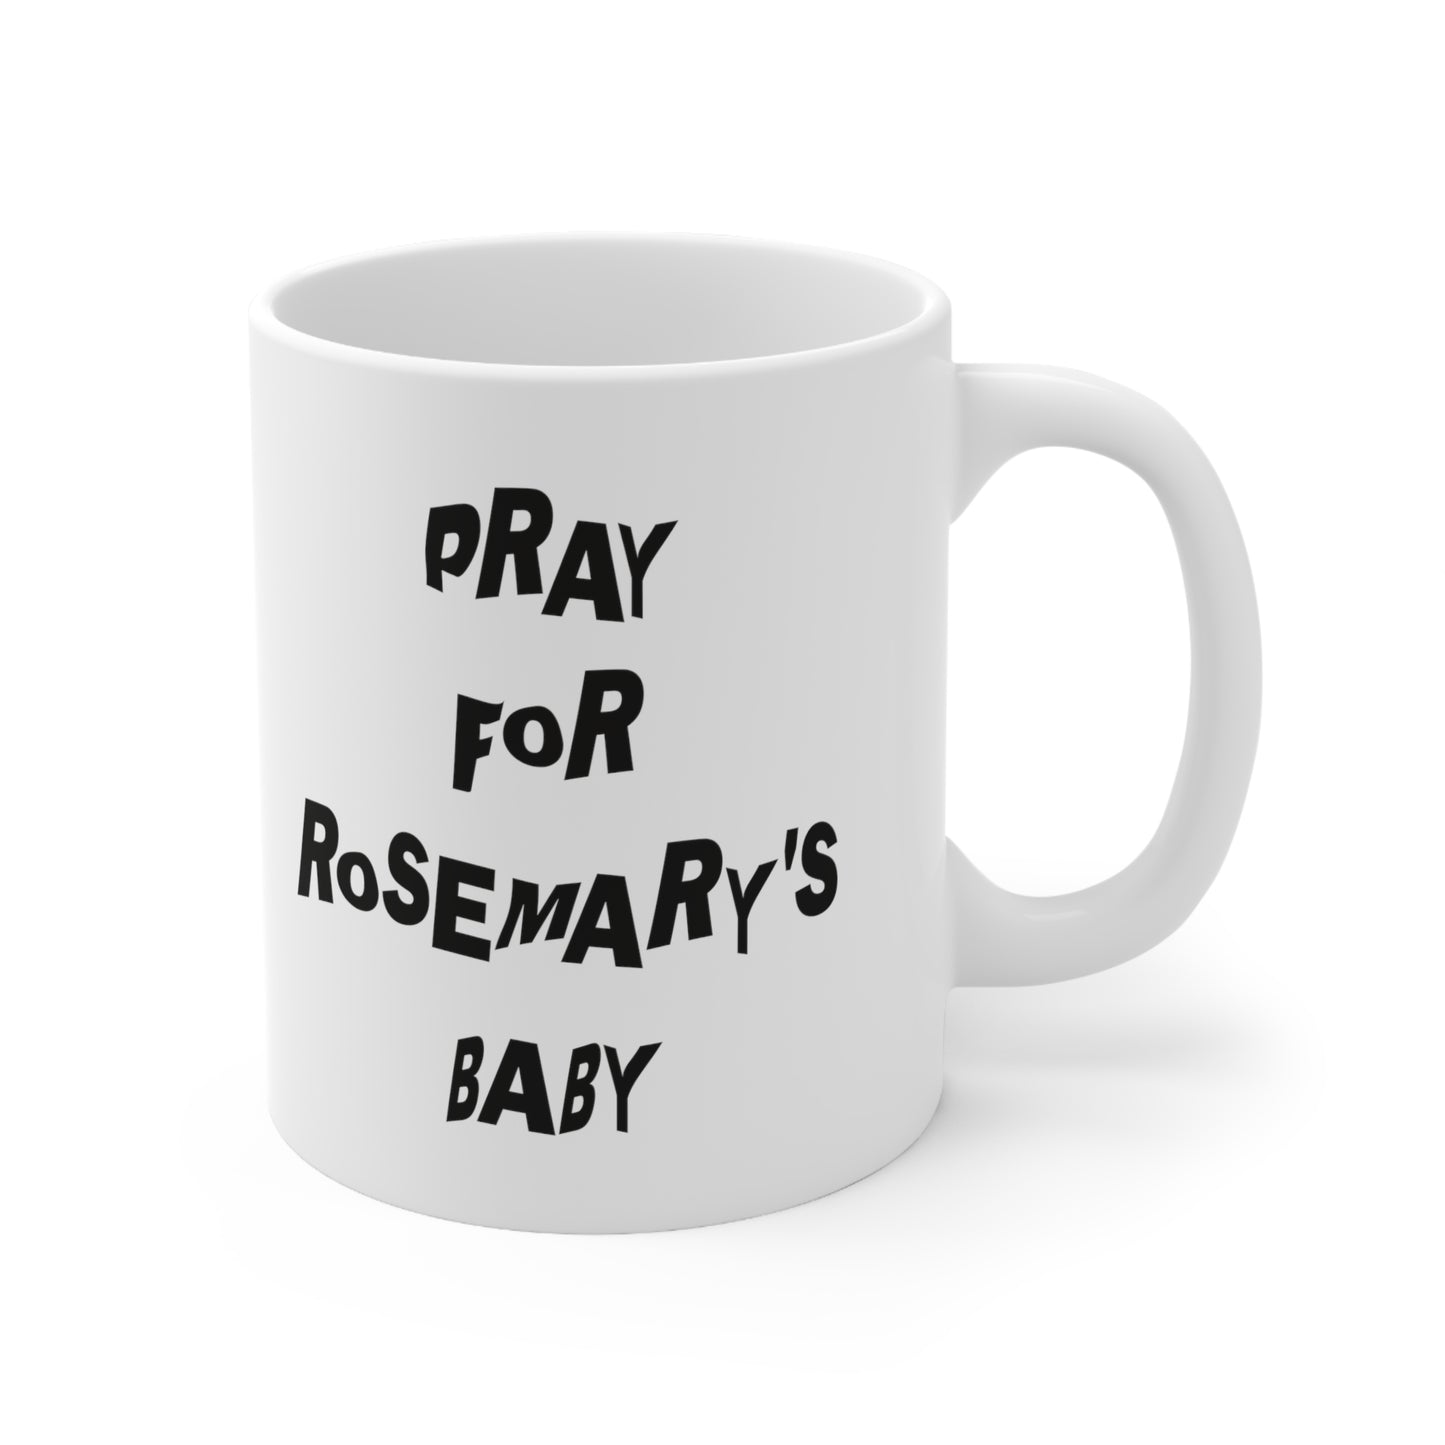 Bid voor de babymok van Rosemary 